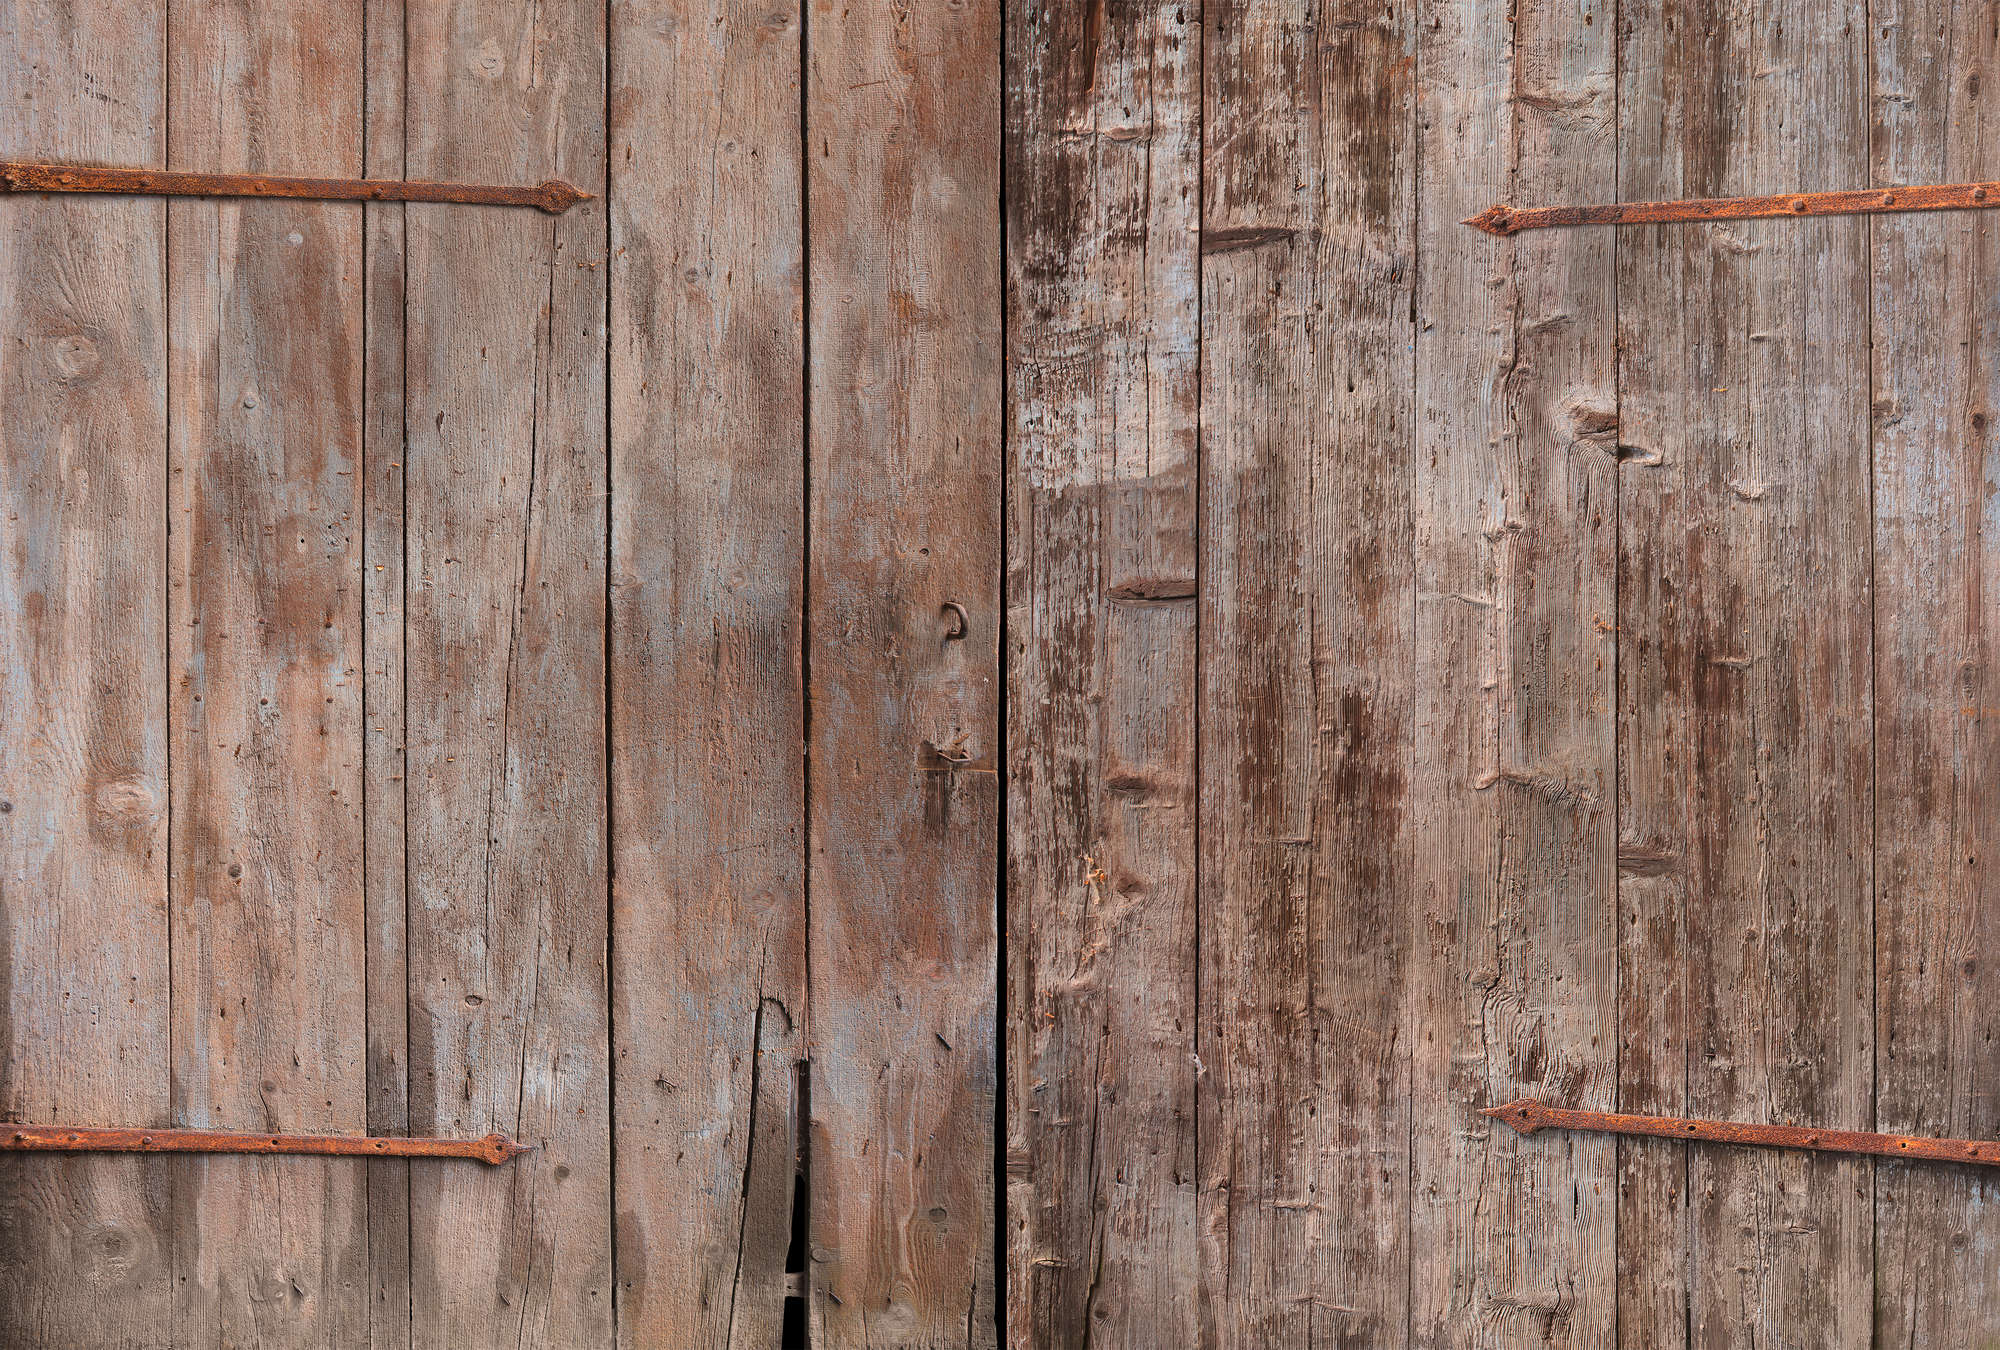             Papel pintado de madera tablero de la puerta del granero óptica en la mirada usada
        